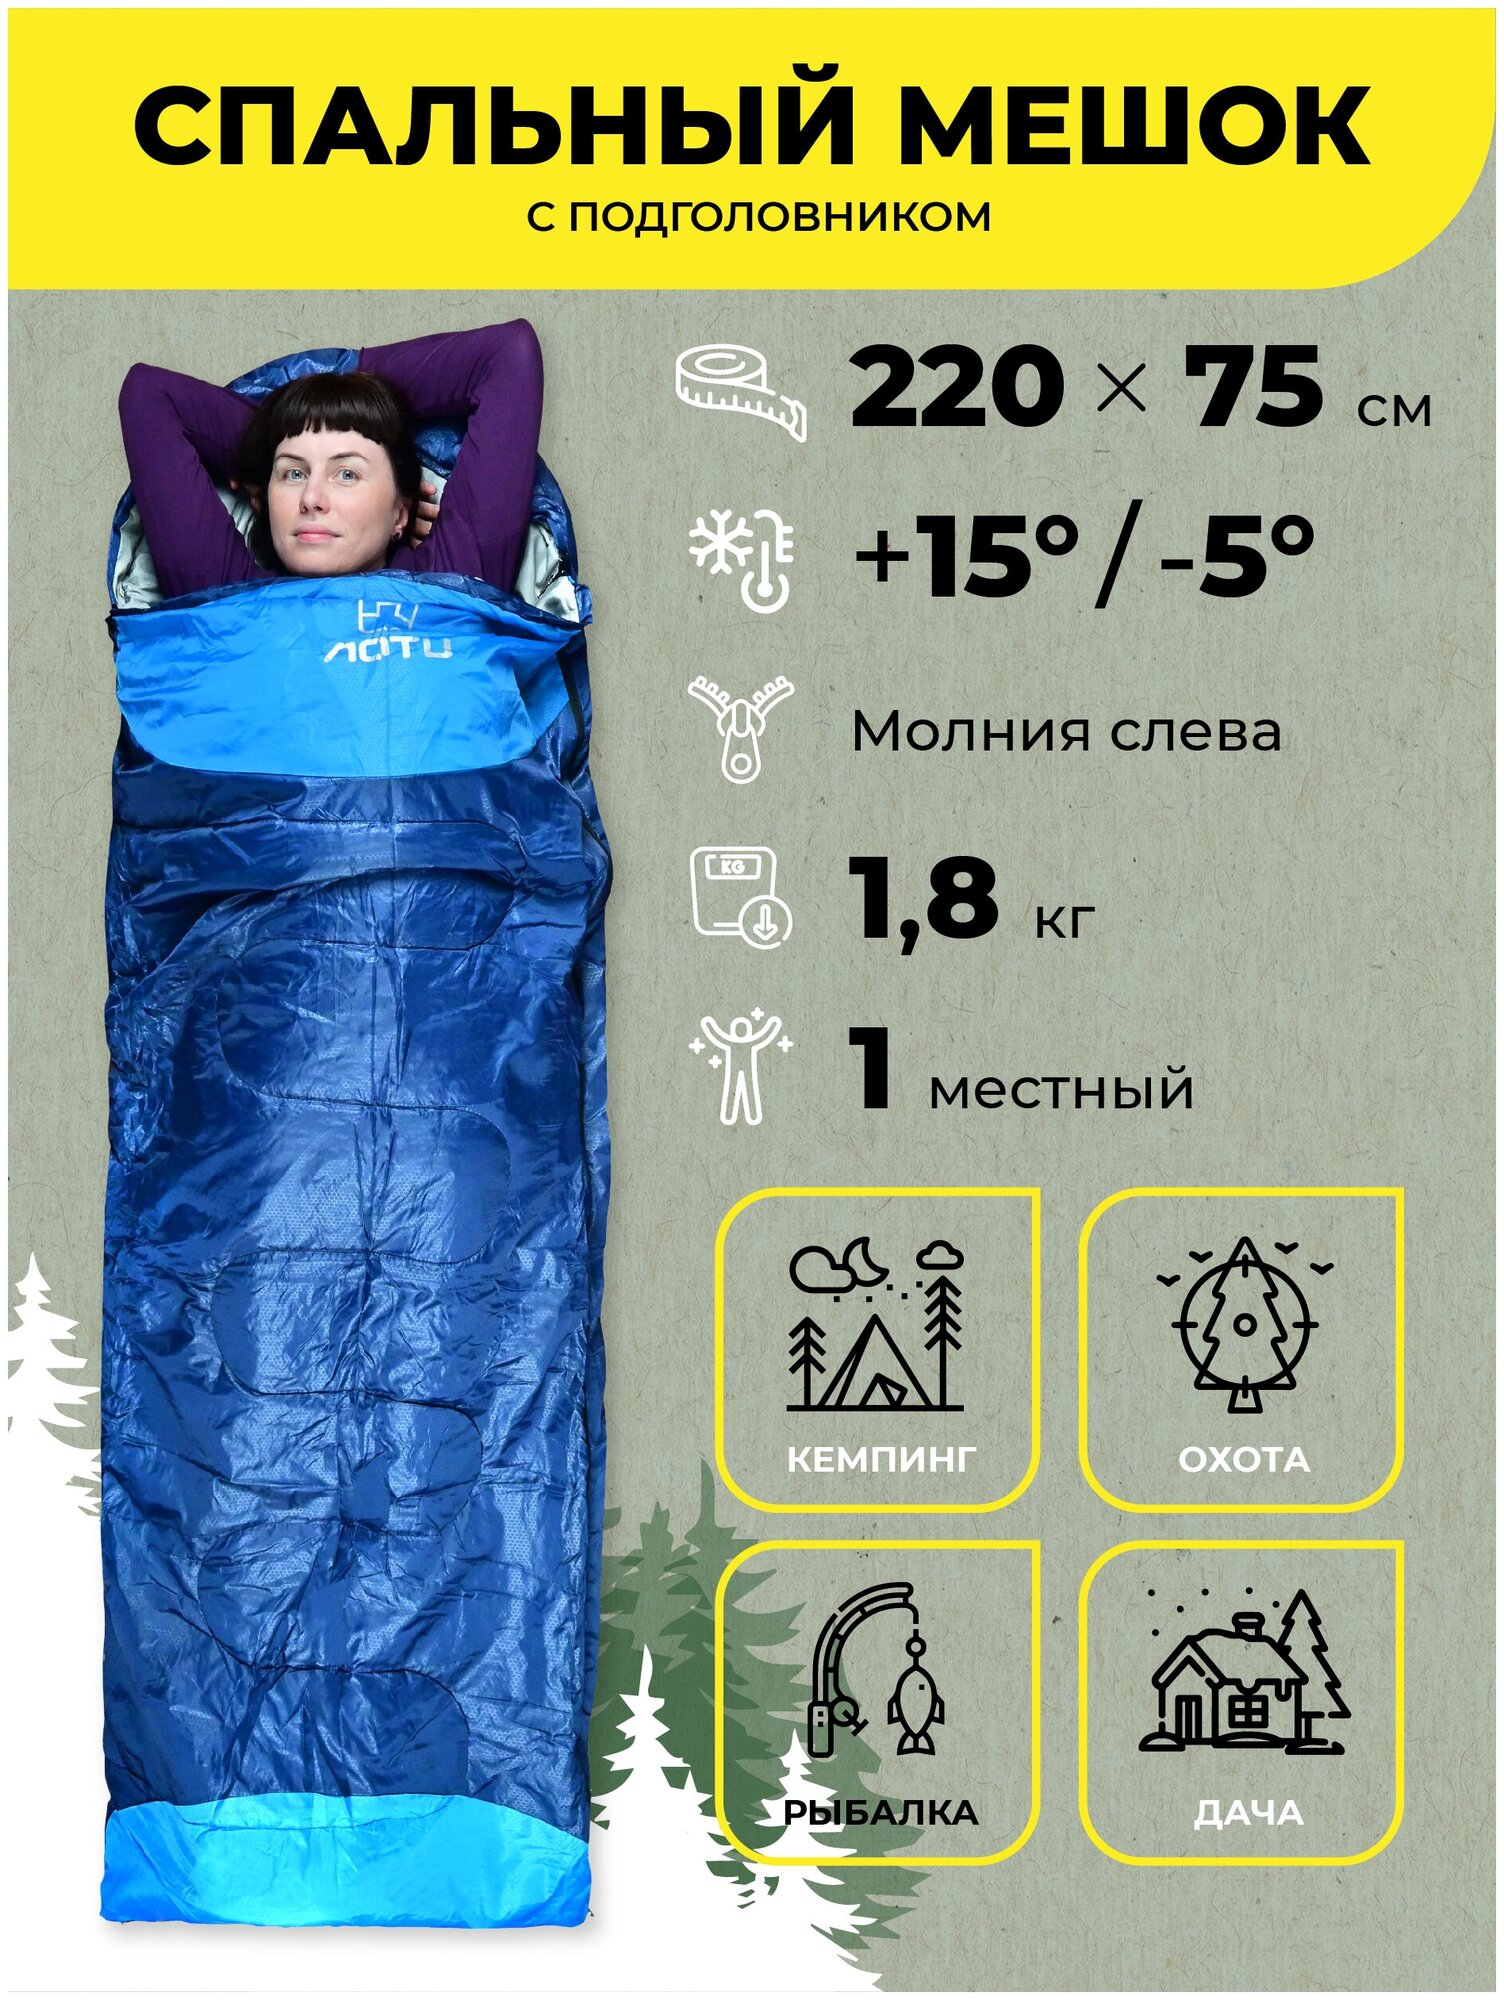 Водонепроницаемый спальный мешок демисезонный AT6101 (левый) 1,8 кг 190х75 см с подголовником 30 см синий / Одинарный спальник туристический